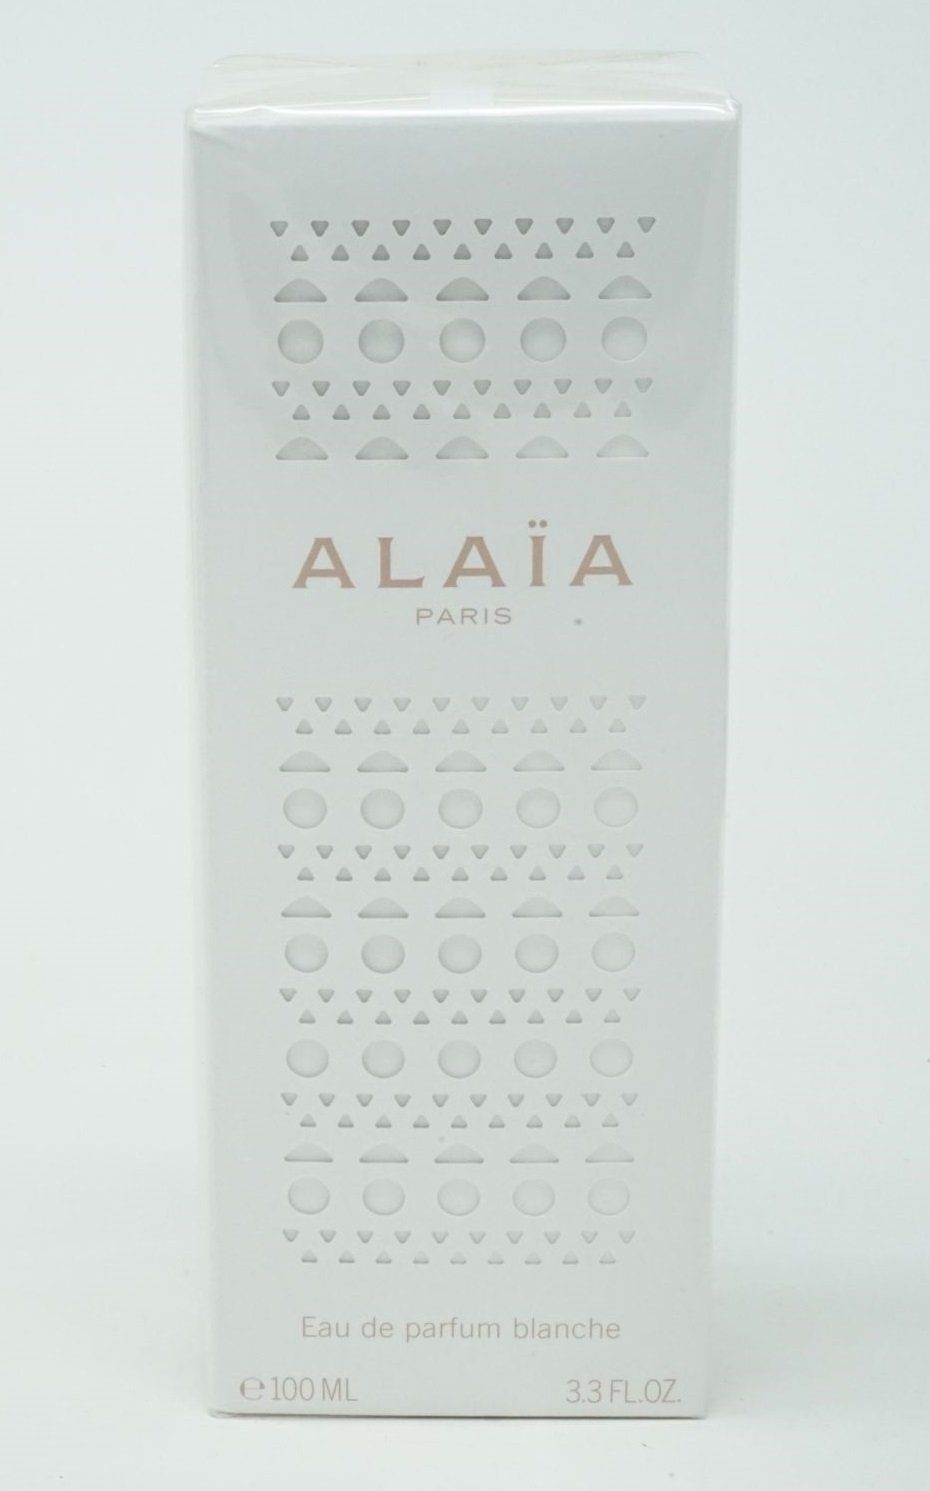 Alaia Eau Parfum de Blanche Parfum Alaia Eau de 100 ml